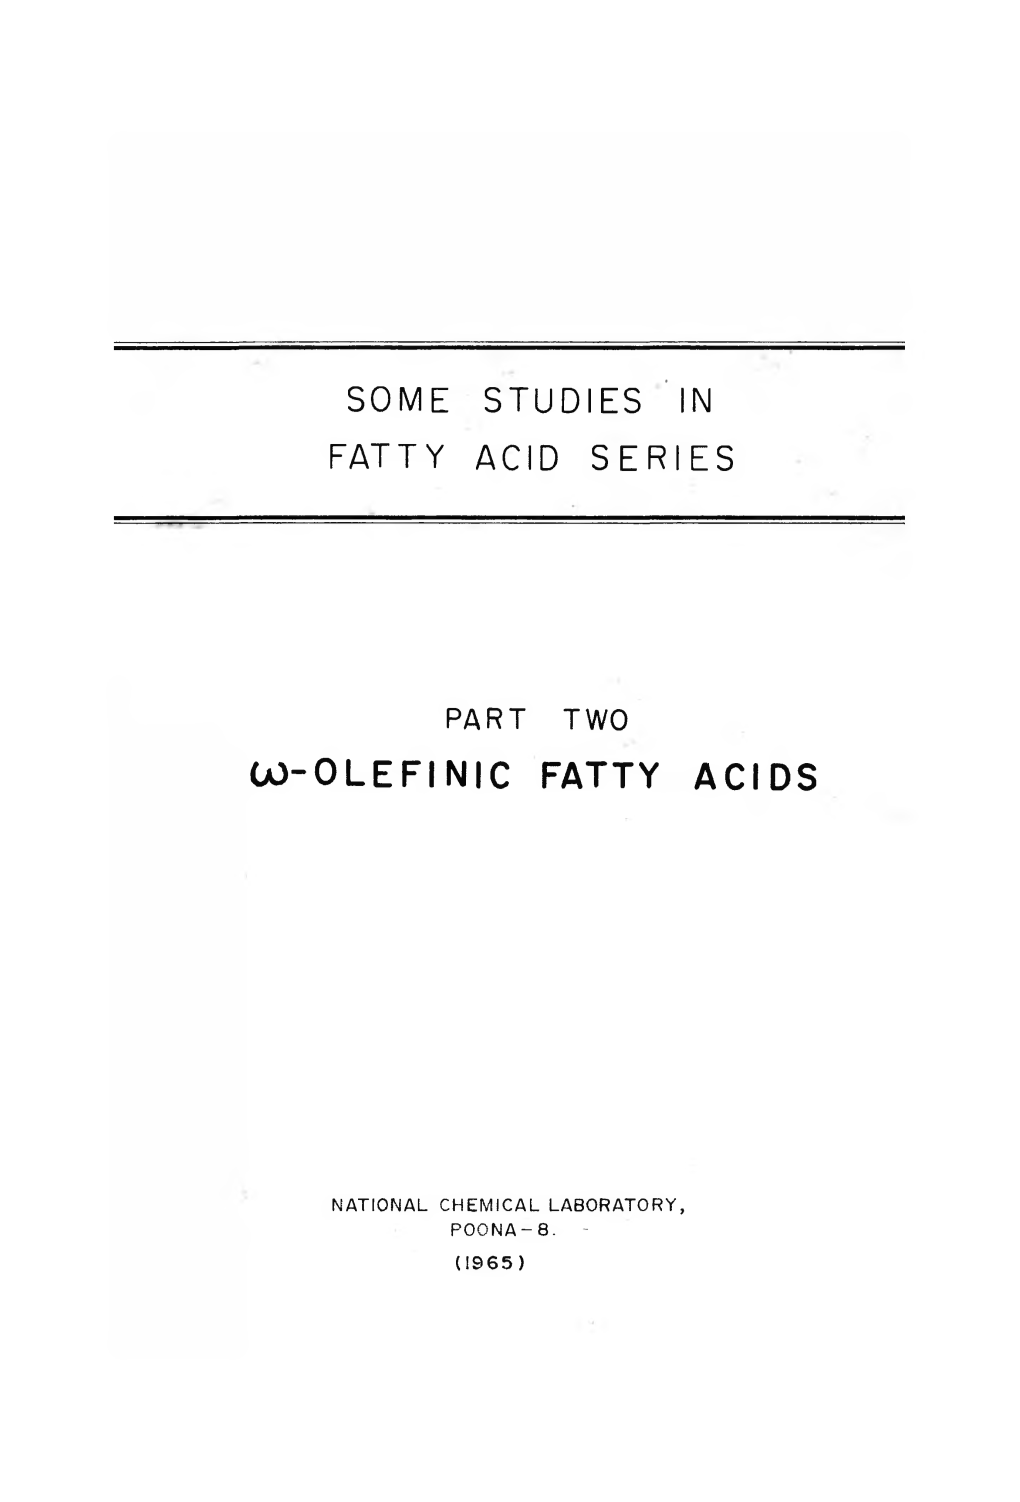 Co-Olefinic Fatty Acids